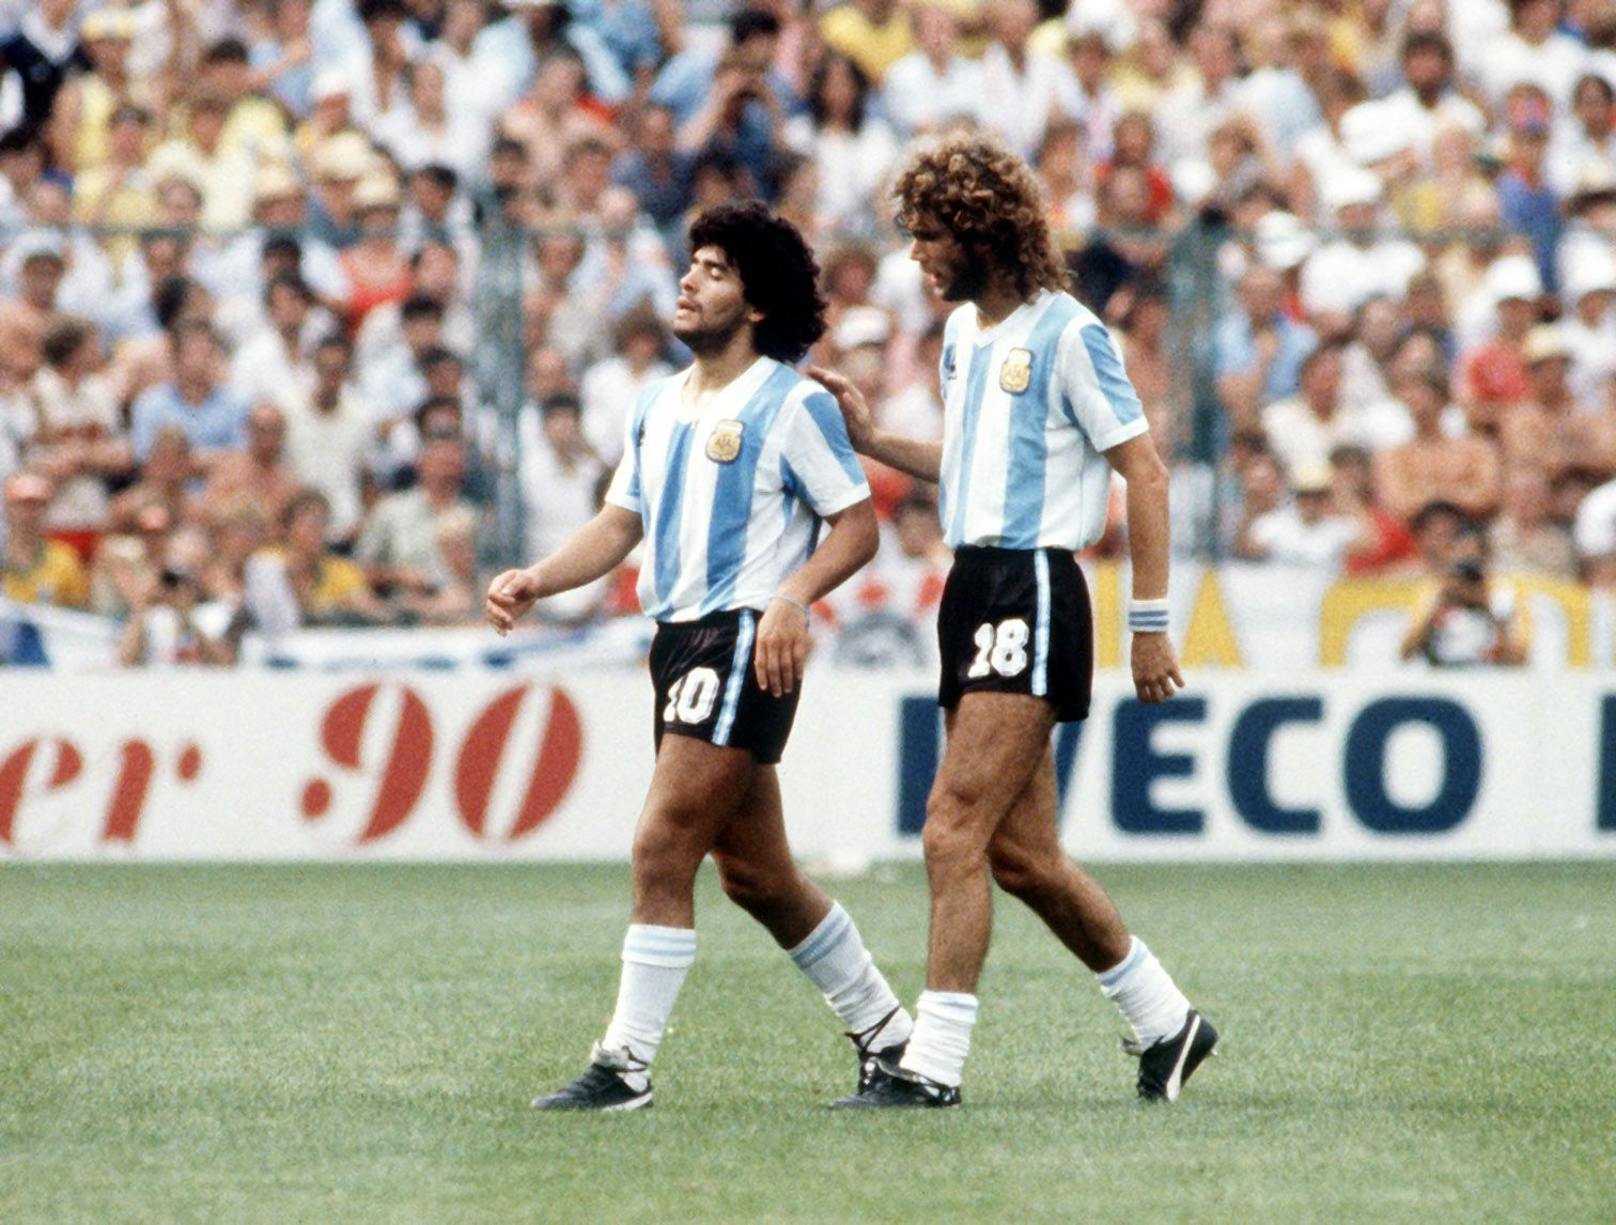 Spielmacher Diego Maradona (l) wird nach einem schweren Foul des Feldes verwiesen. Abwehrspieler Alberto Tarantini tröstet ihn. Die argentinische Fußballnationalmannschaft verliert am 02.07.1982 vor 44.000 Zuschauern im Sarria-Stadion in Barcelona das Weltmeisterschaftsspiel der 2. Finalrunde als Titelverteidiger gegen den Erzrivalen Brasilien mit 1:3 und muss ausscheiden. 